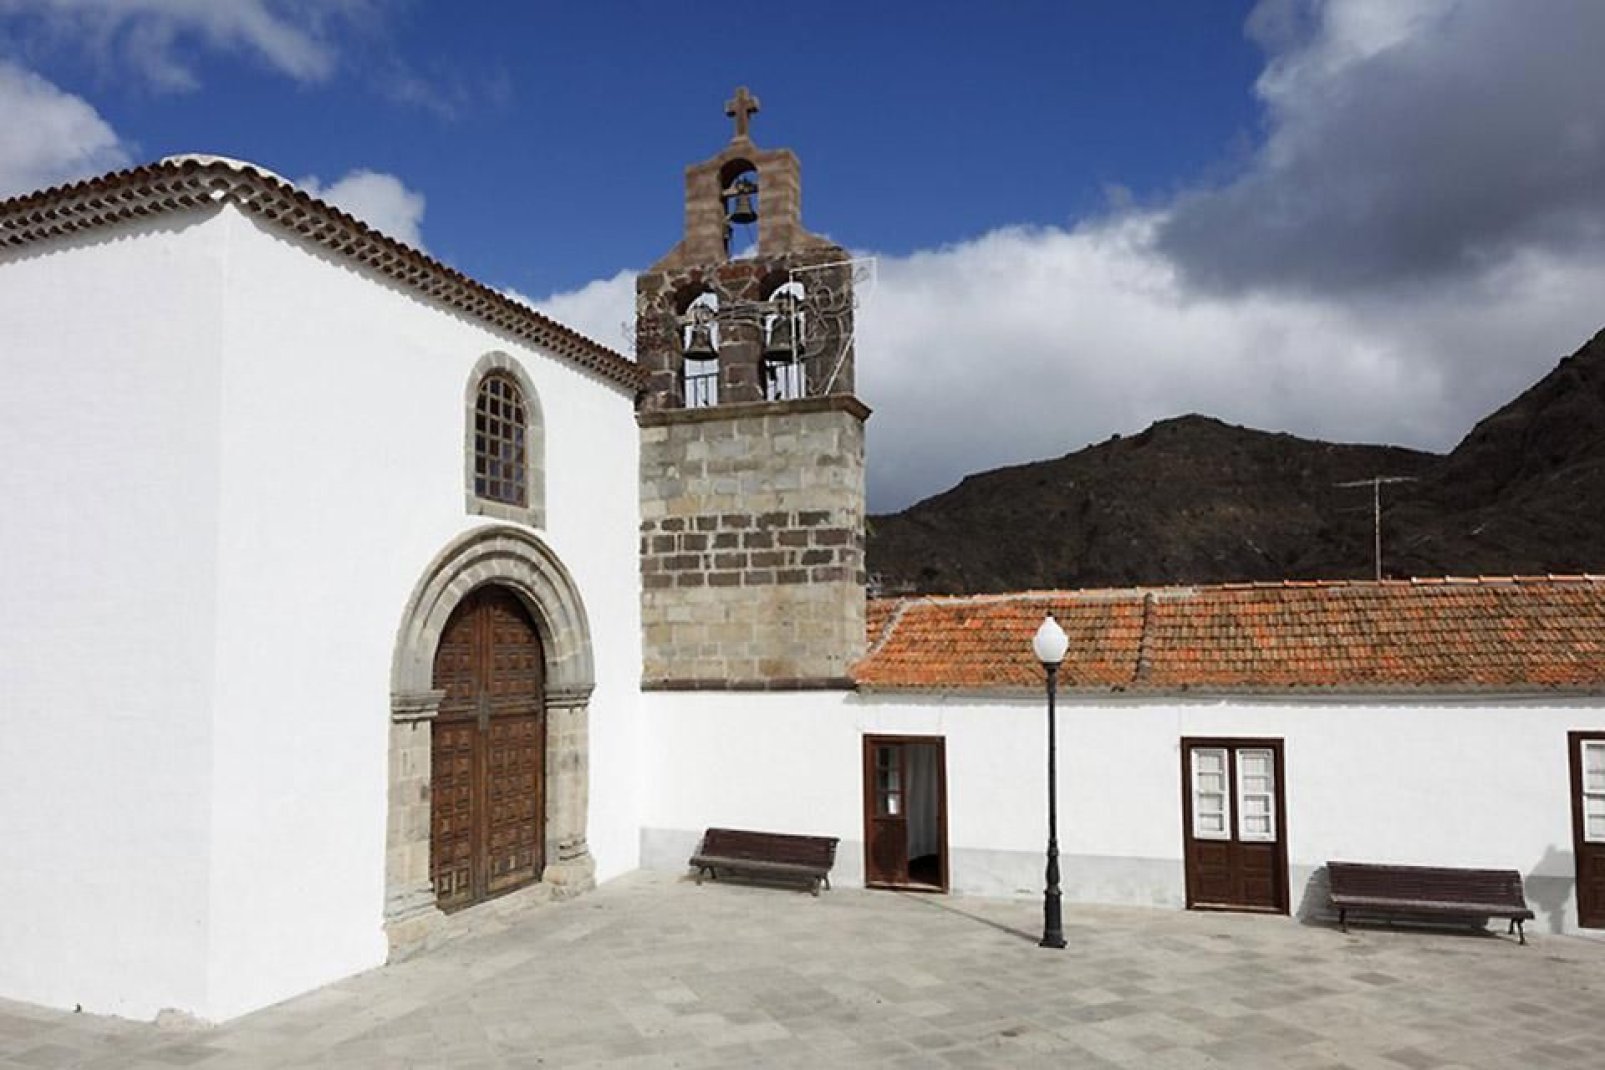 Sie haben Gelegenheit, einige interessante Sehenswürdigkeiten wie die Kirche Santo Domingo, die Wassermühle und das ethnografische Museum zu besuchen.